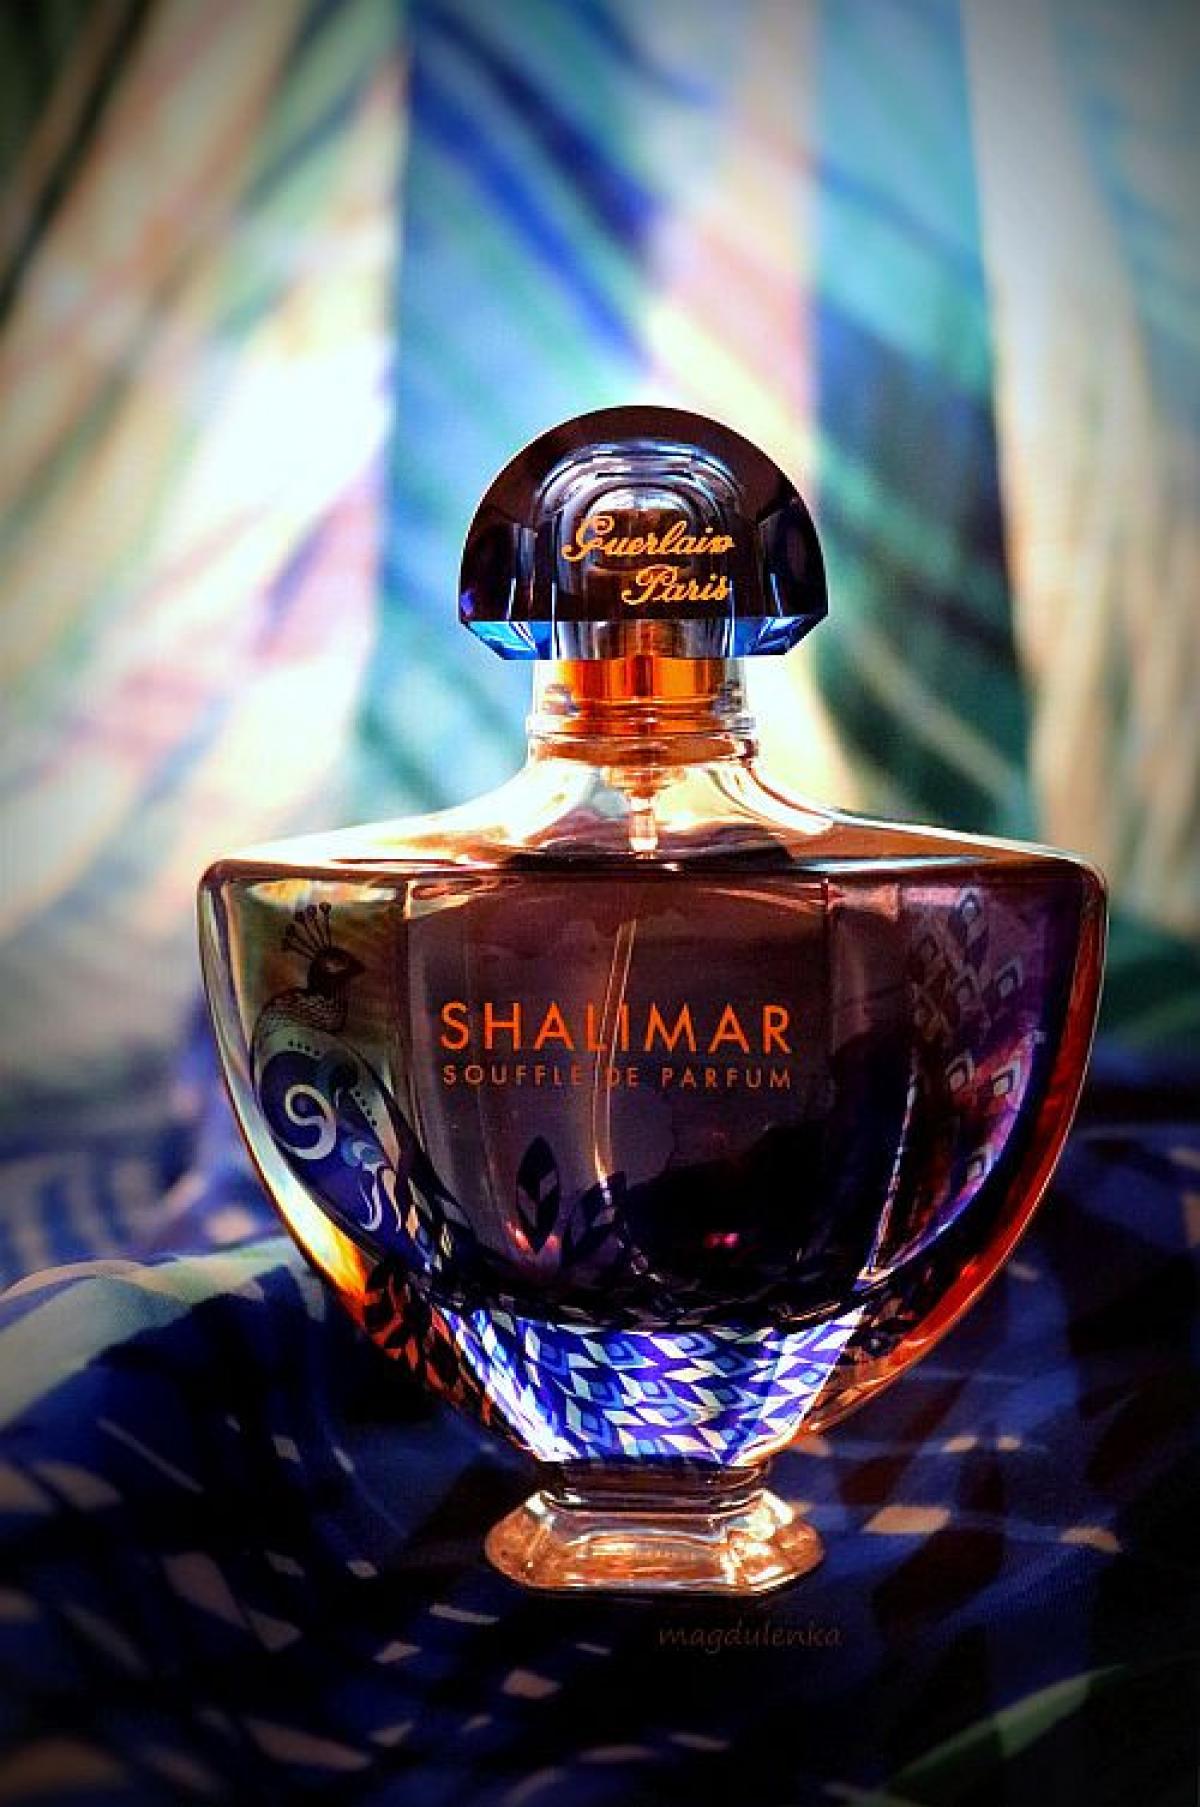 Shalimar Souffle de Parfum 2017 Guerlain perfume - a fragrância